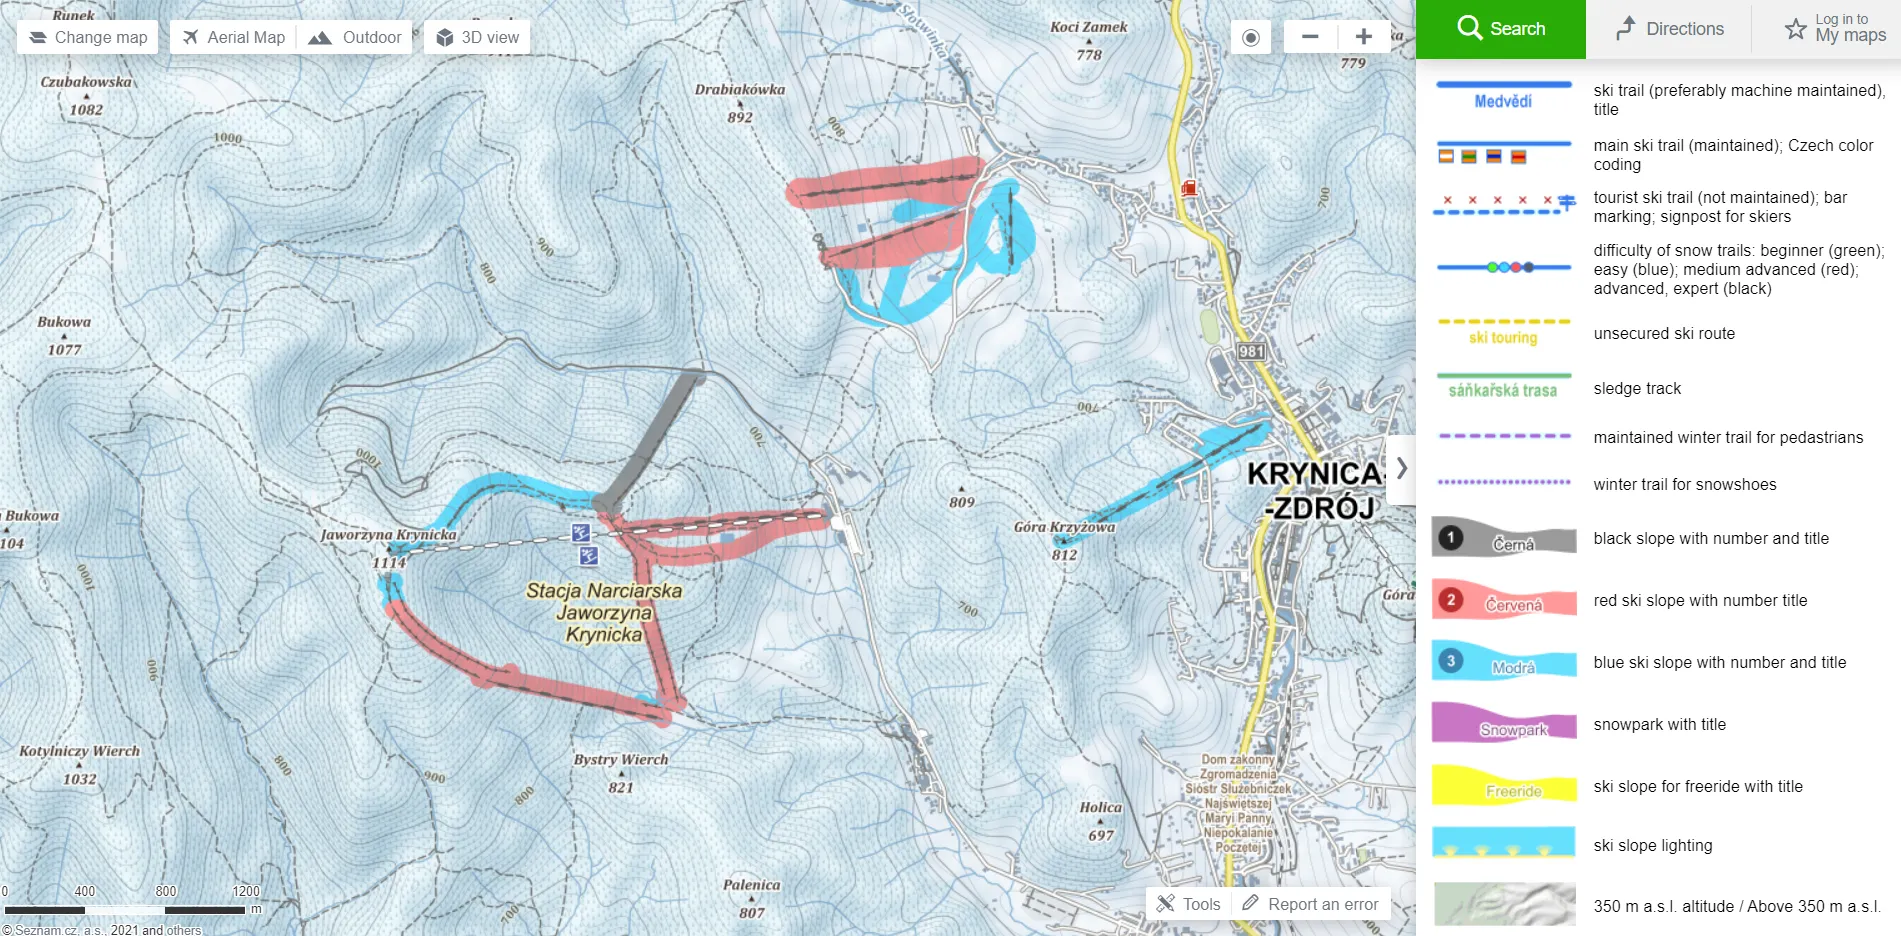 Mapy.cz Ski trails on winter map